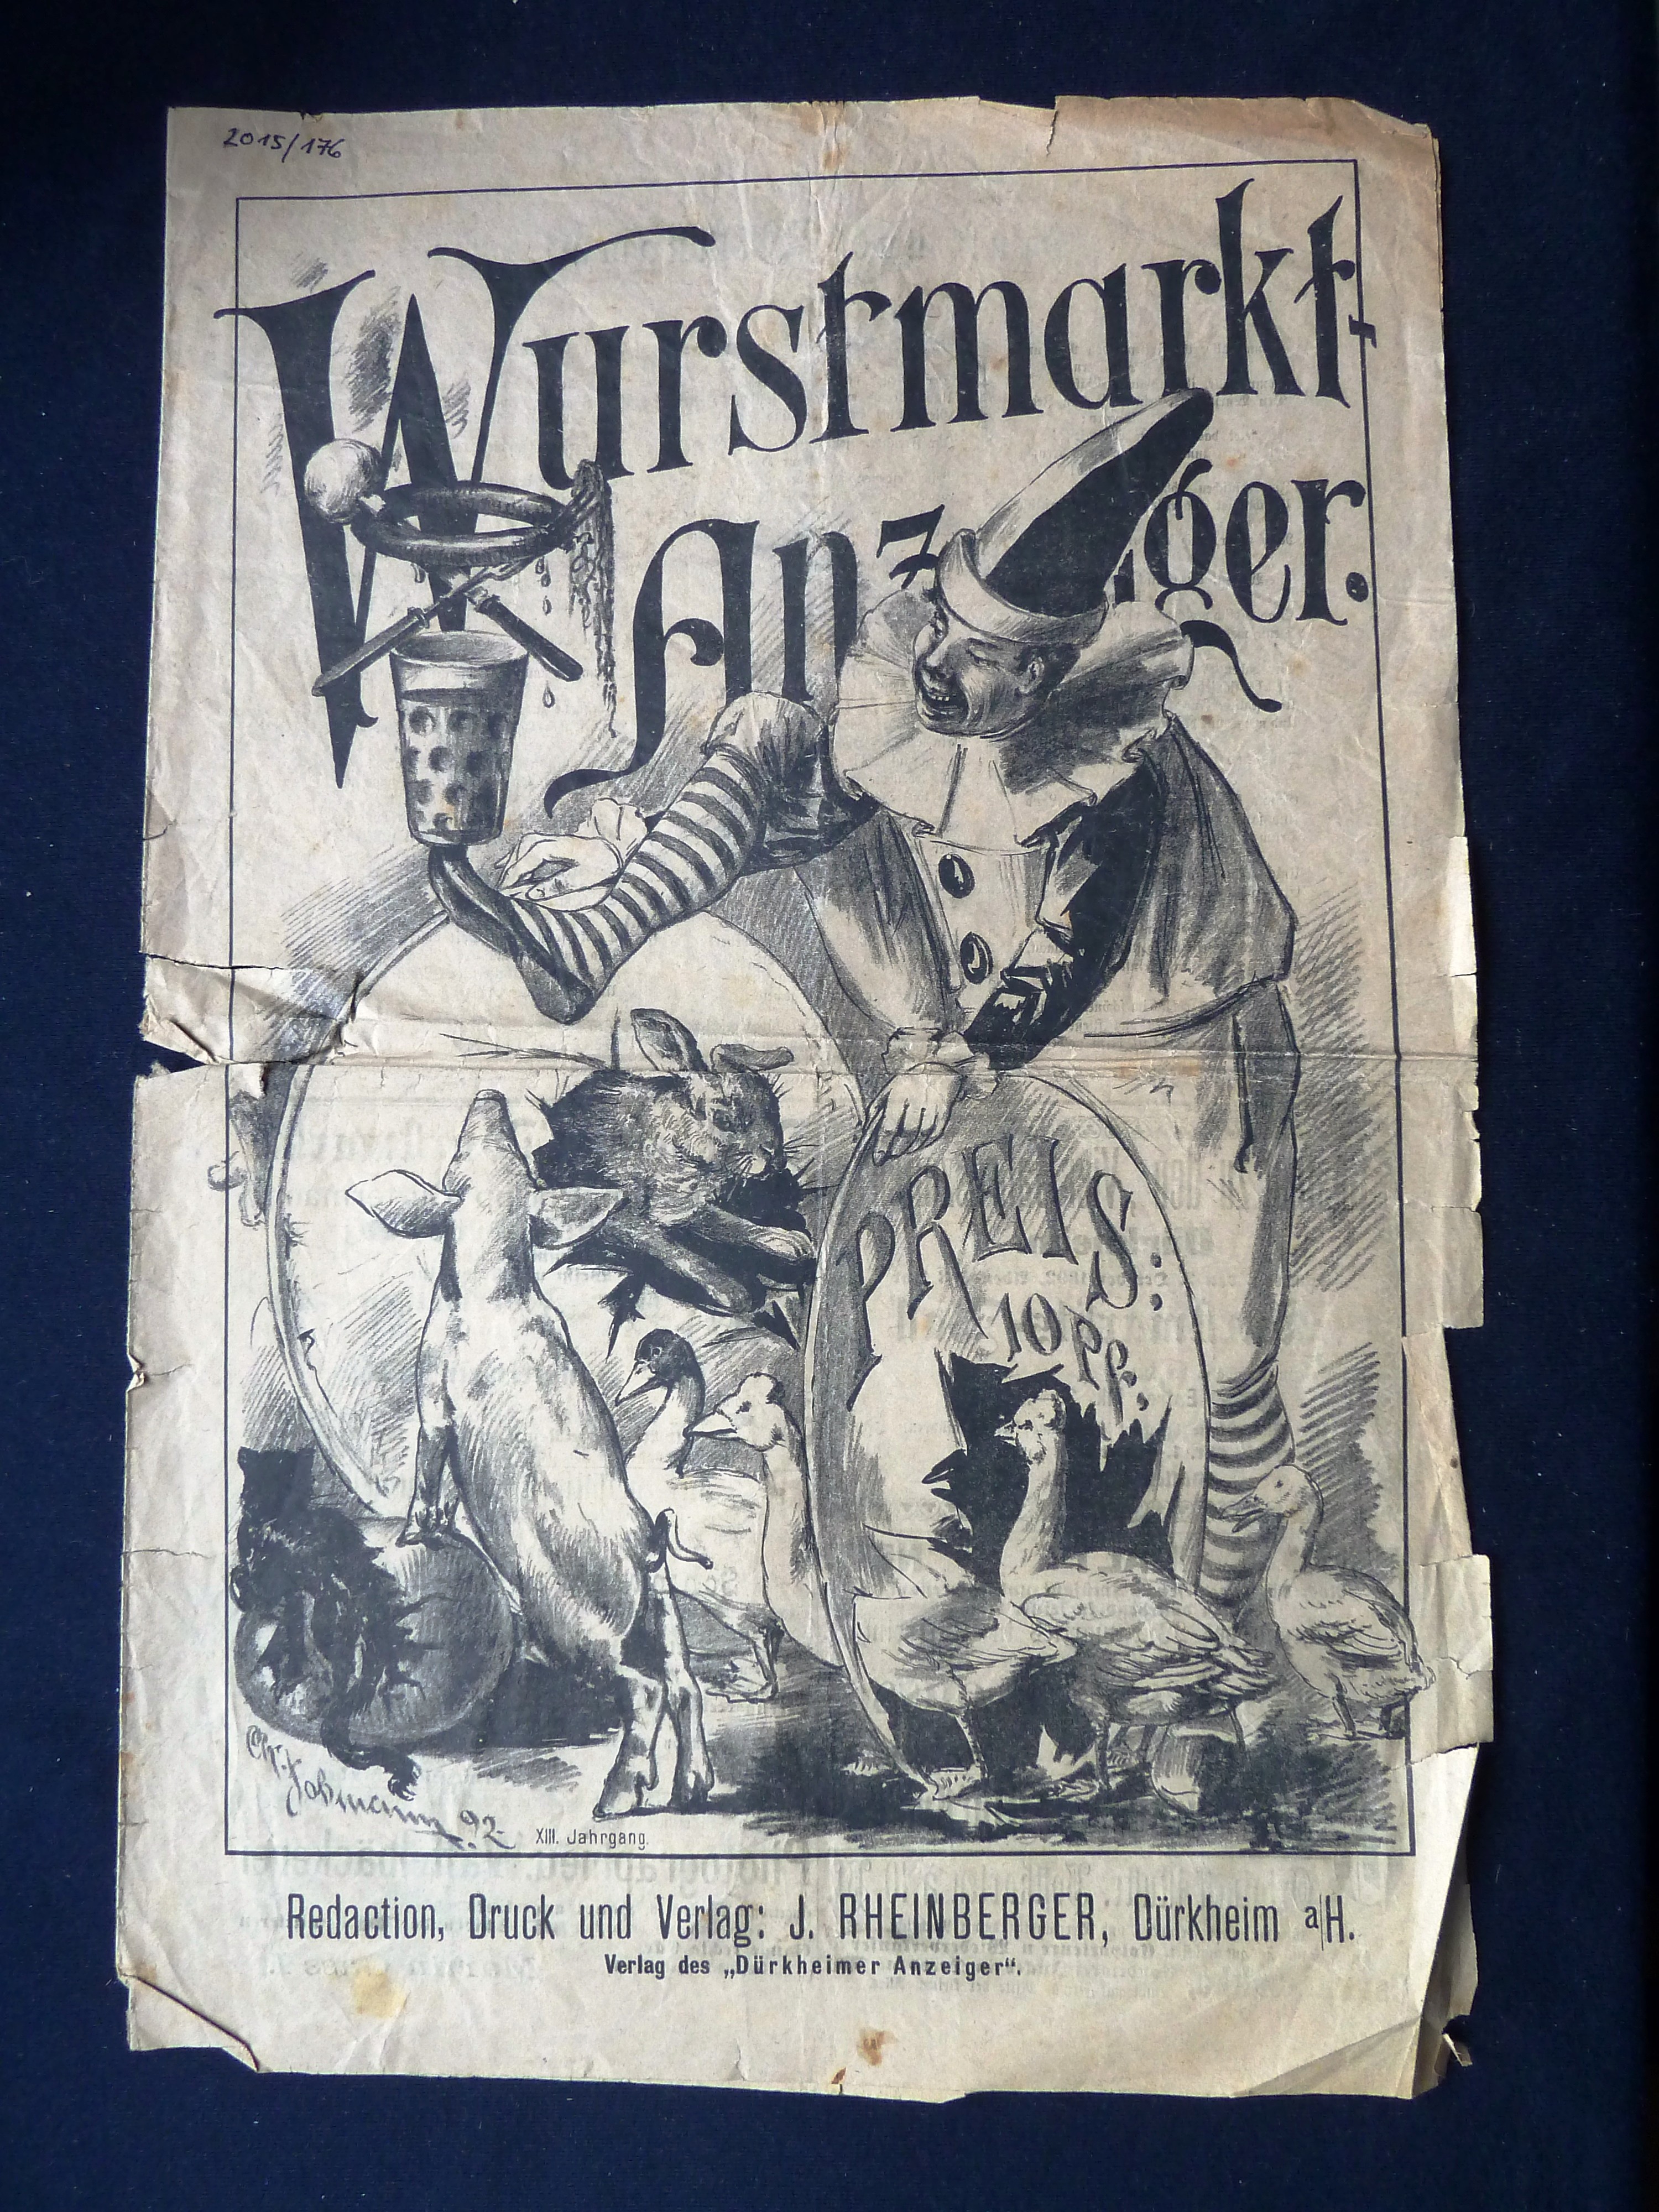 Zeitung; Anzeiger: "Wurstmarkt-Anzeiger"; J. Rheinberger, V. Dirion; Dürkheim a/H.; 1892 (Stadtmuseum Bad Dürkheim, Museumsgesellschaft Bad Dürkheim e.V. CC BY-NC-SA)